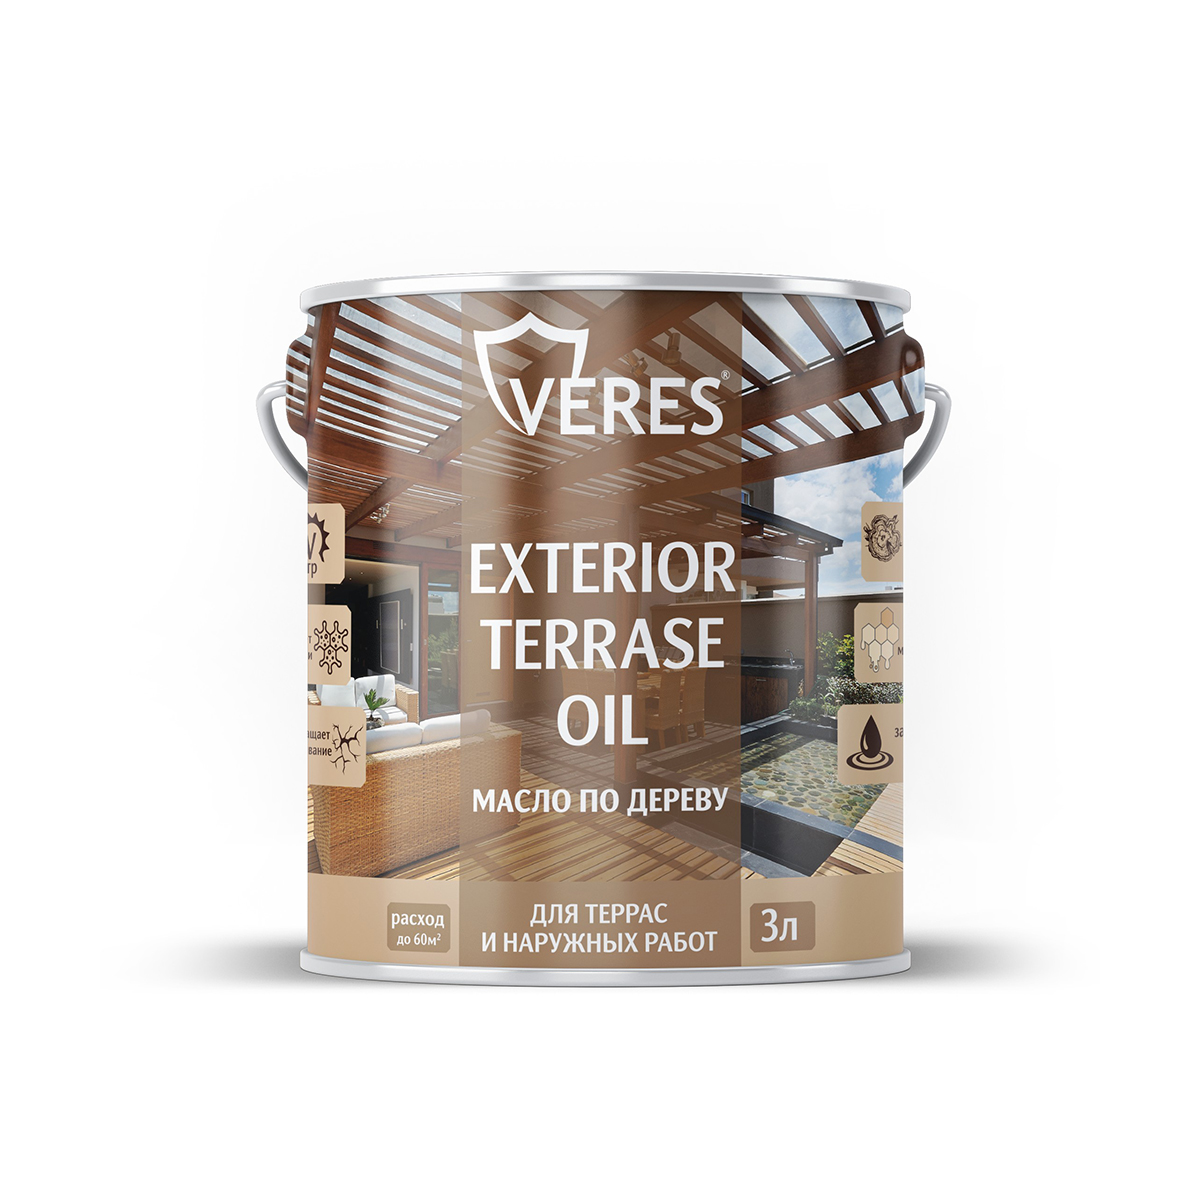 Масло для дерева Veres Exterior Terrase Oil, 3 л, белое масло для дерева